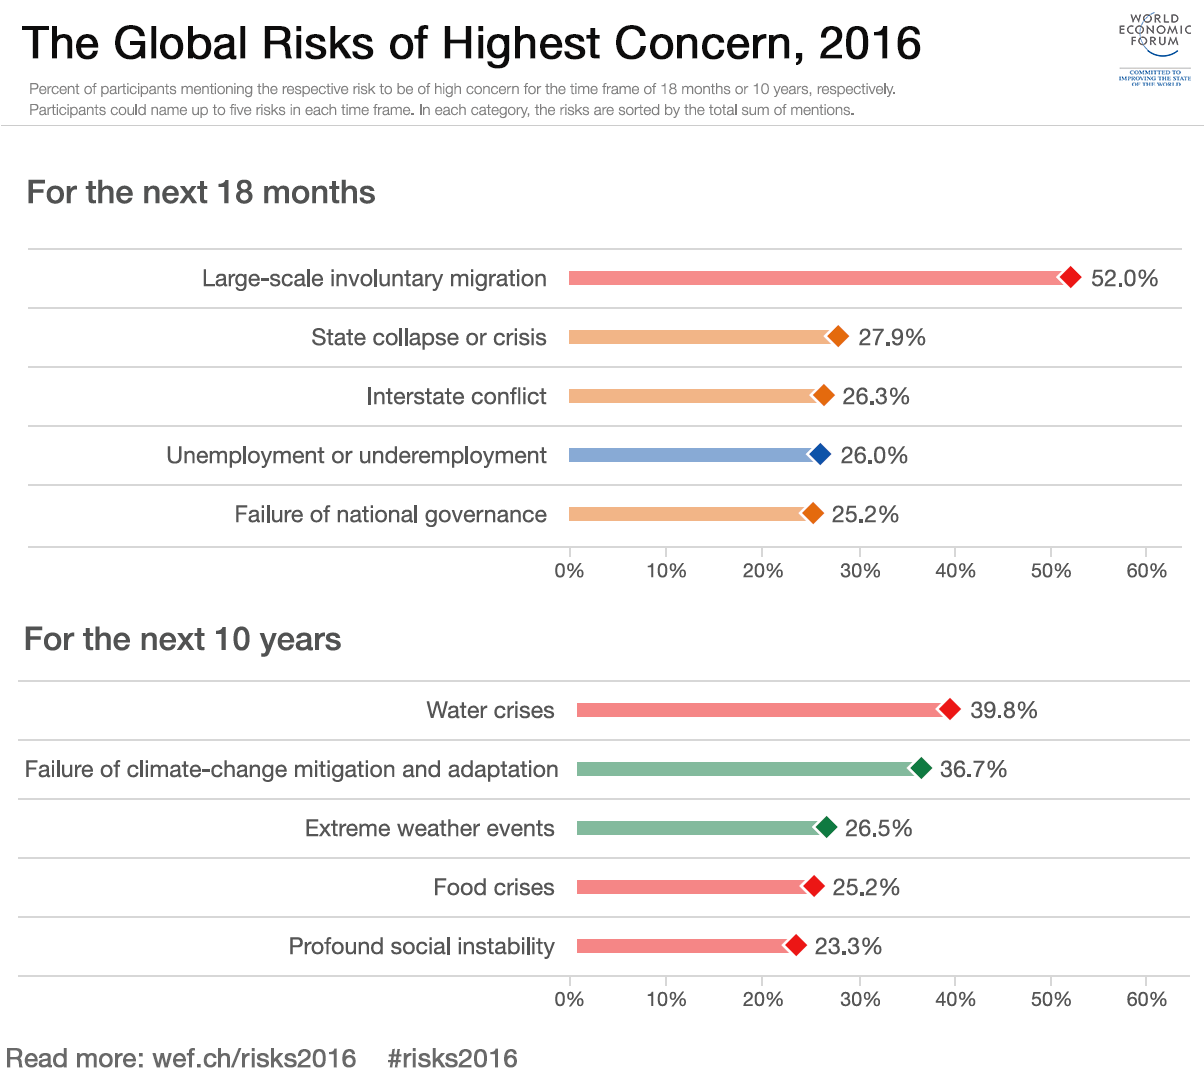 The global risks of highest concern 2016